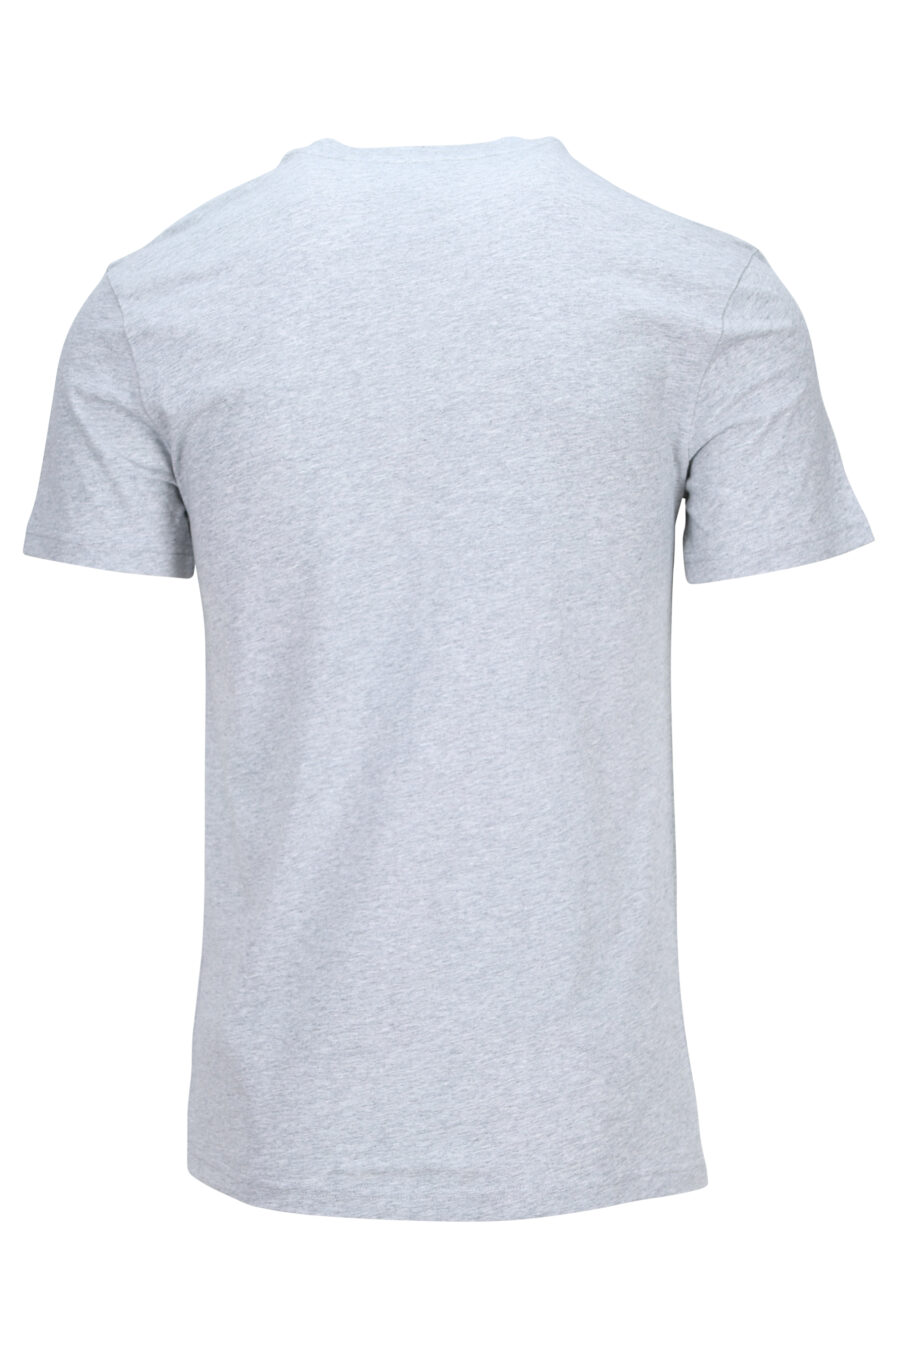 T-shirt cinzenta com maxilogo "couture milano" - 889316936414 1